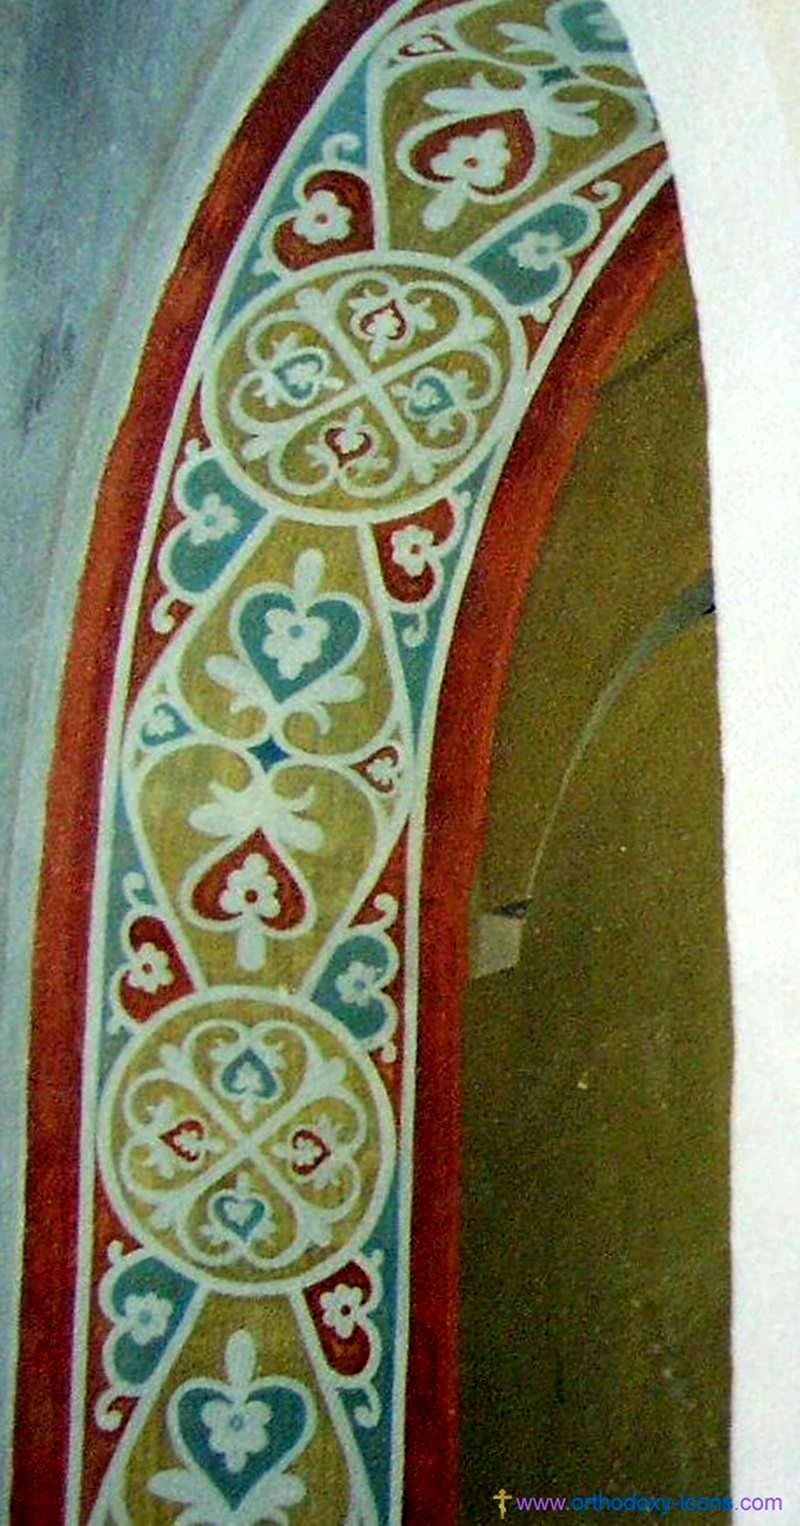 Византийский орнамент в иконописи